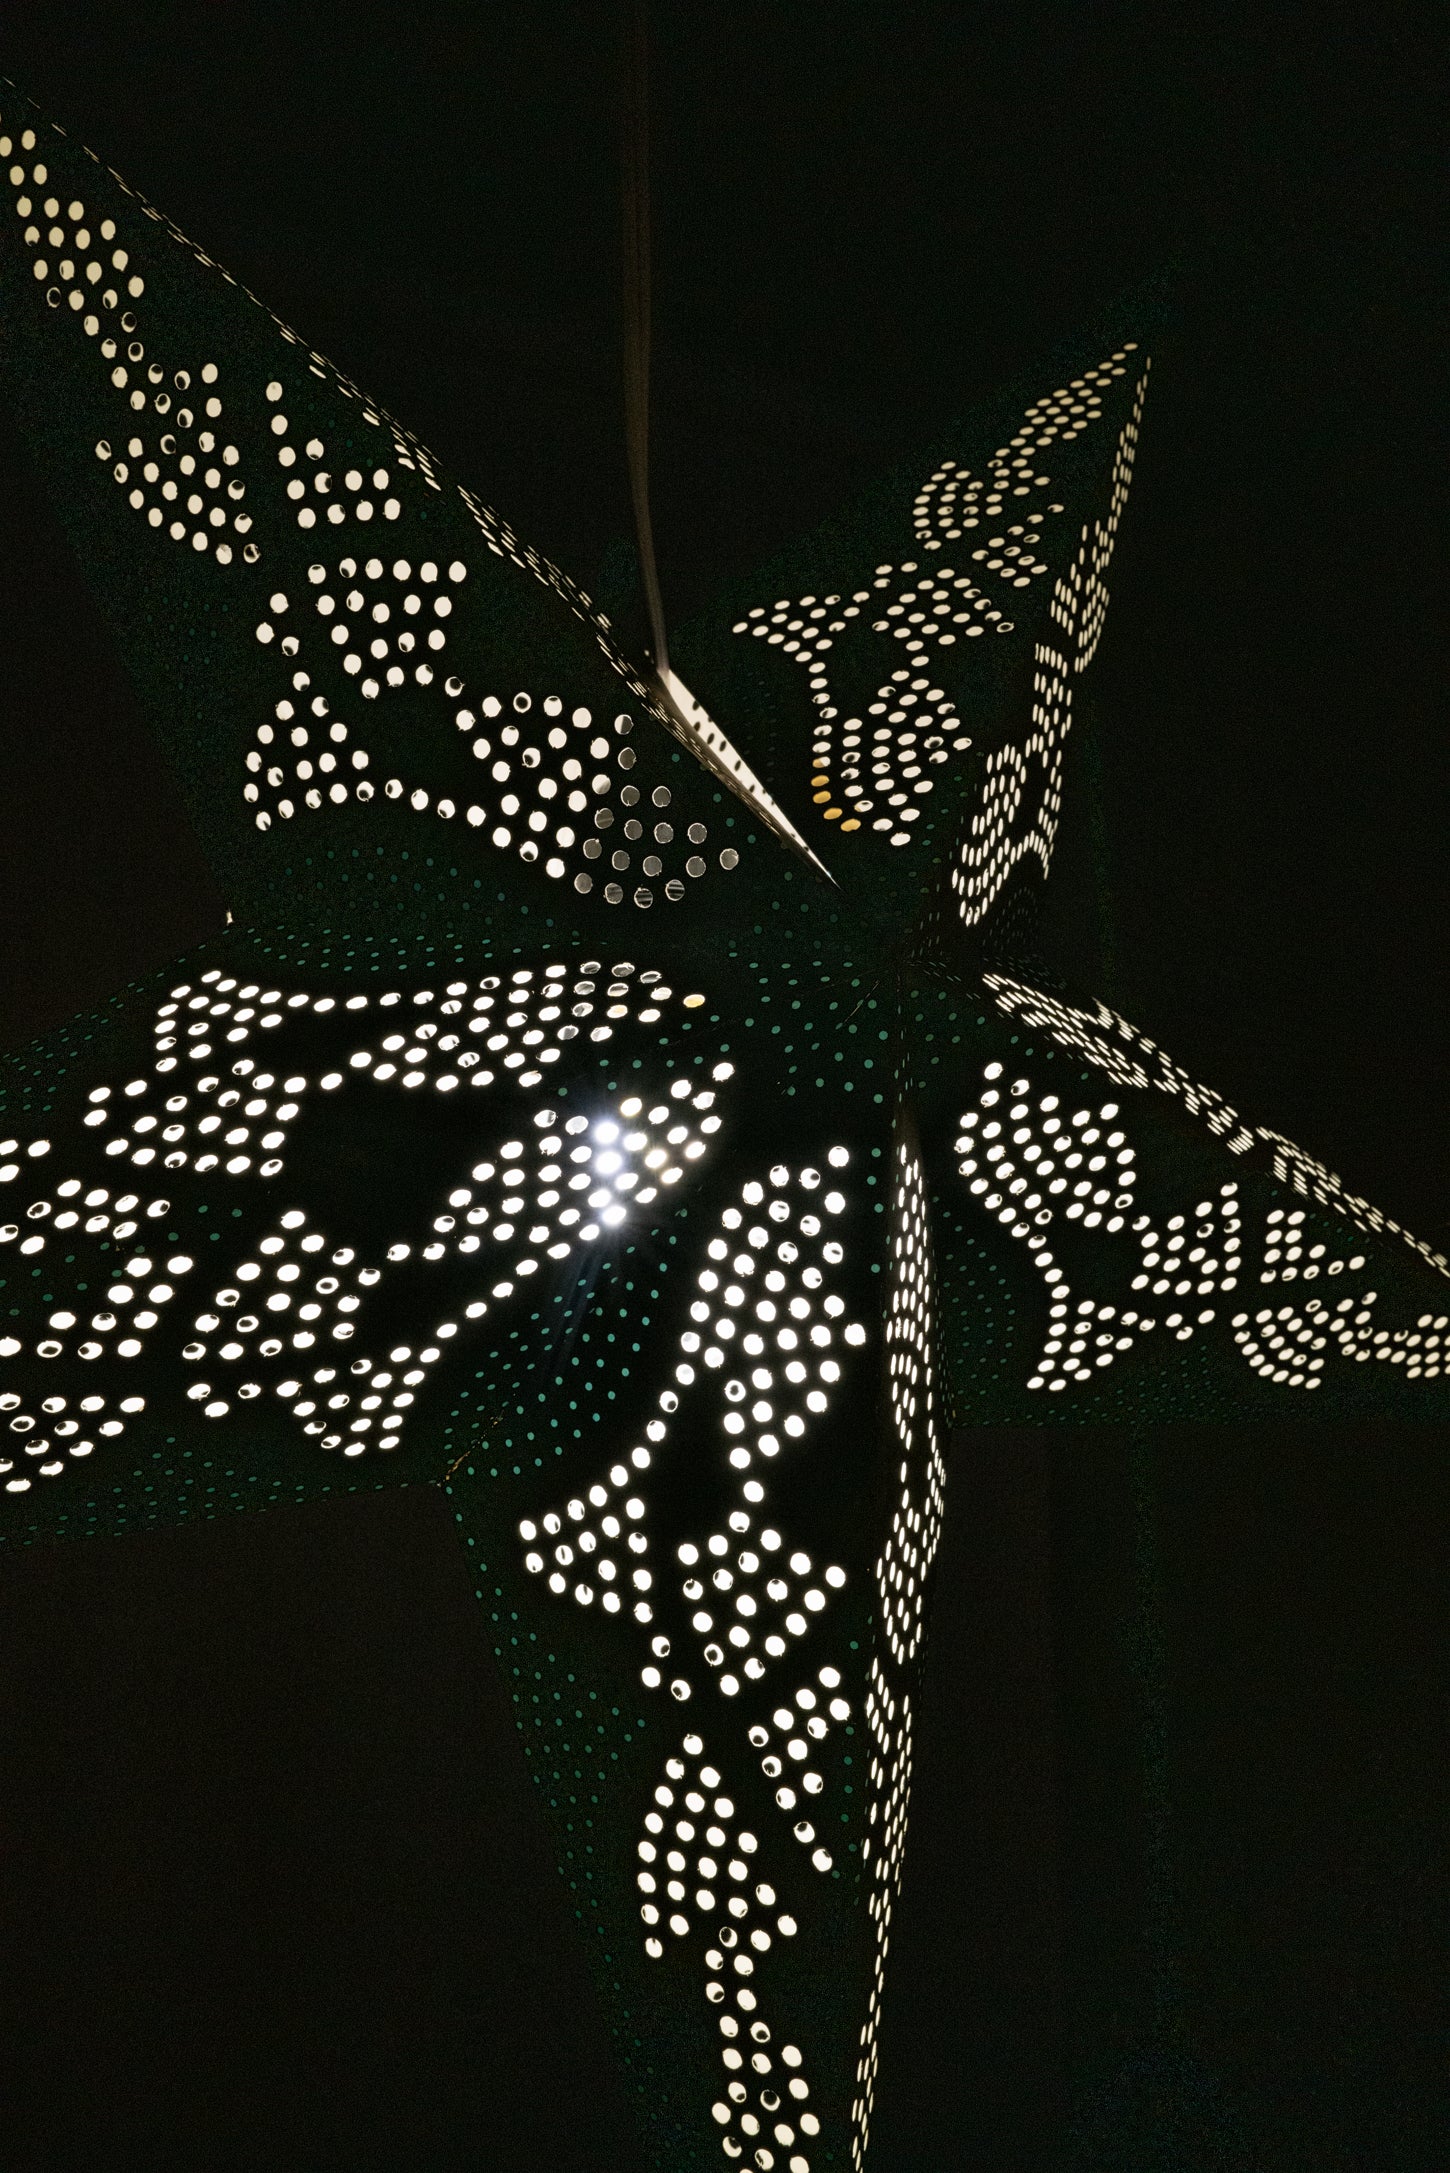 Metallic Star Paper Lanterns